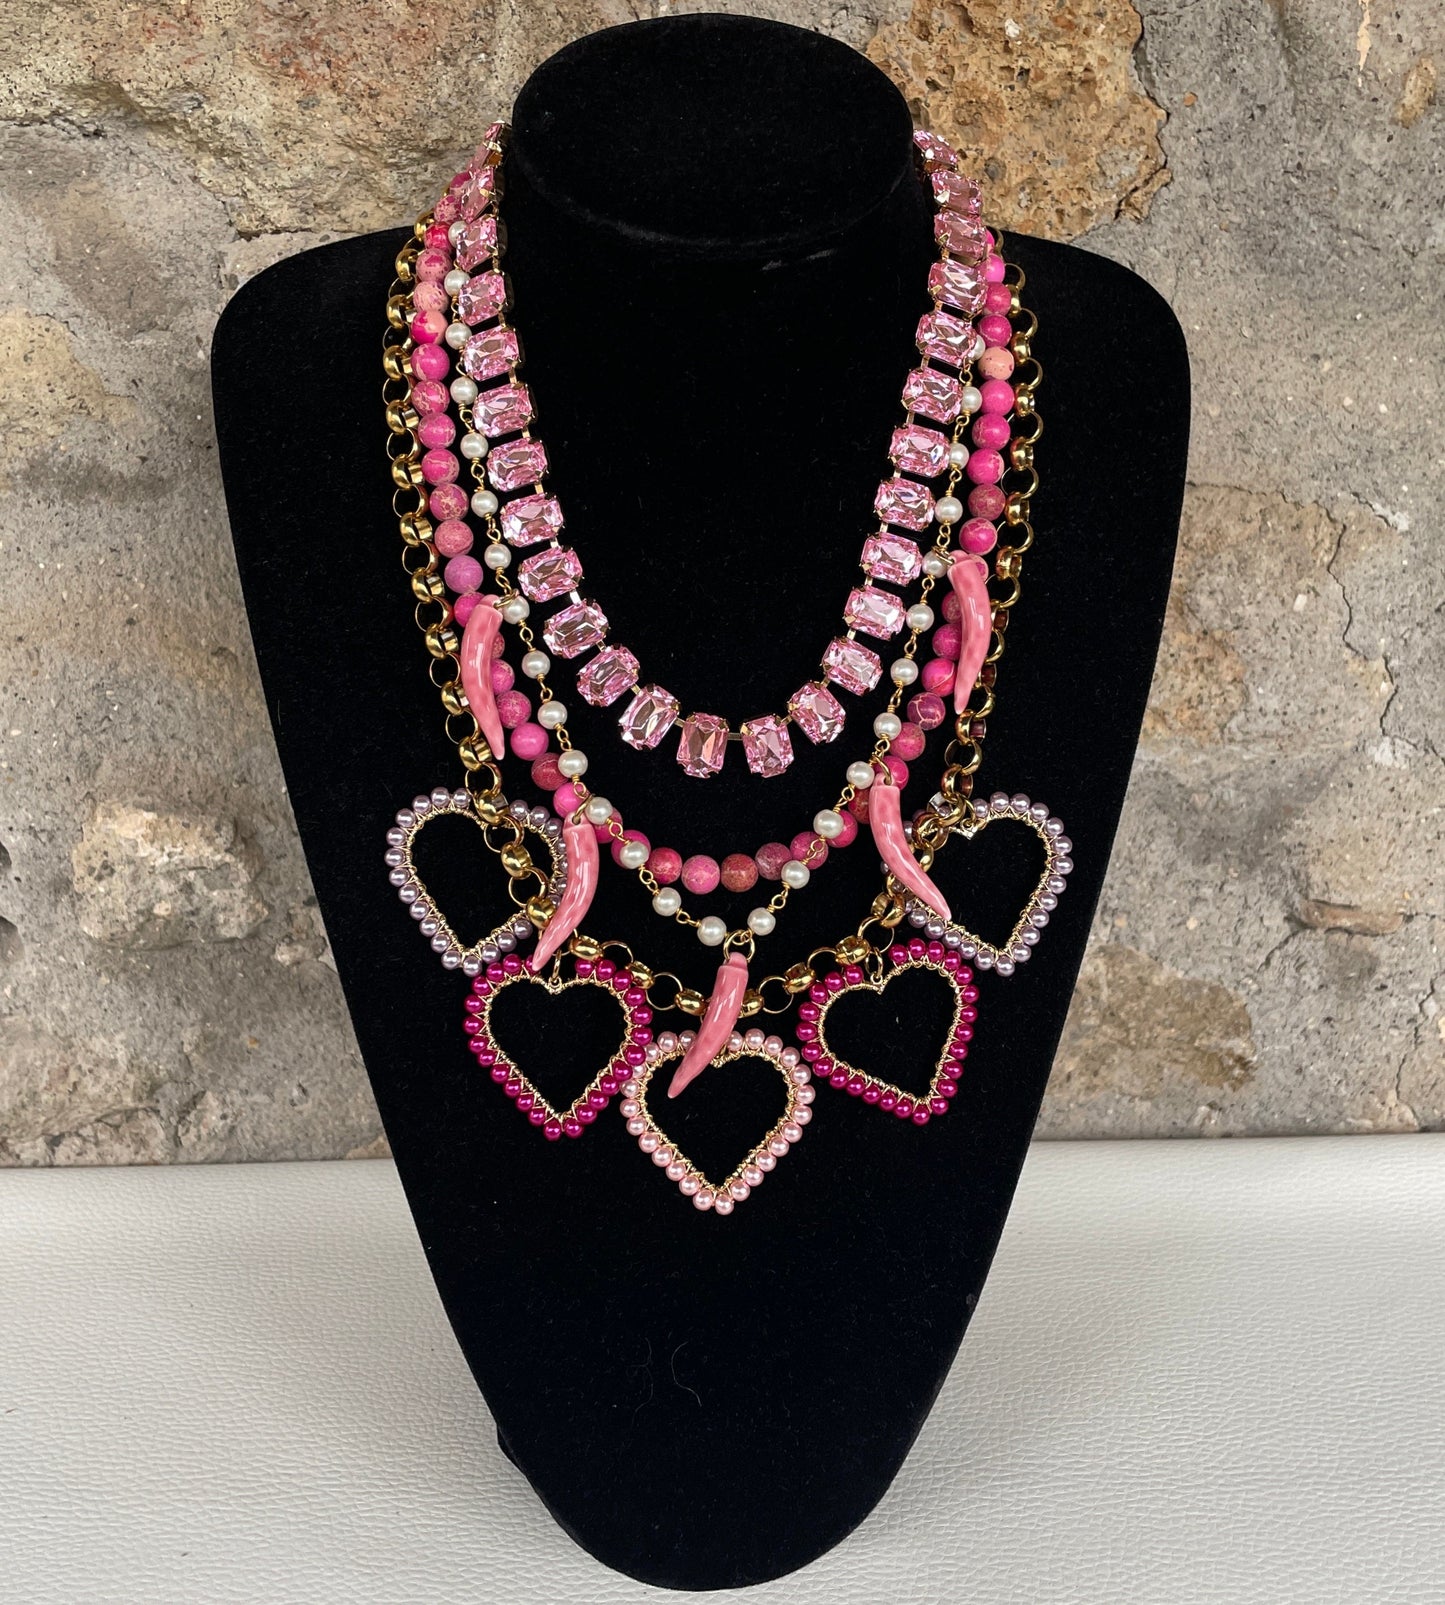 Collana composita, cinque fili, cristalli, corni ceramica, diaspro rosa, perle, cuori colorati, collana rosa, collana boho.&